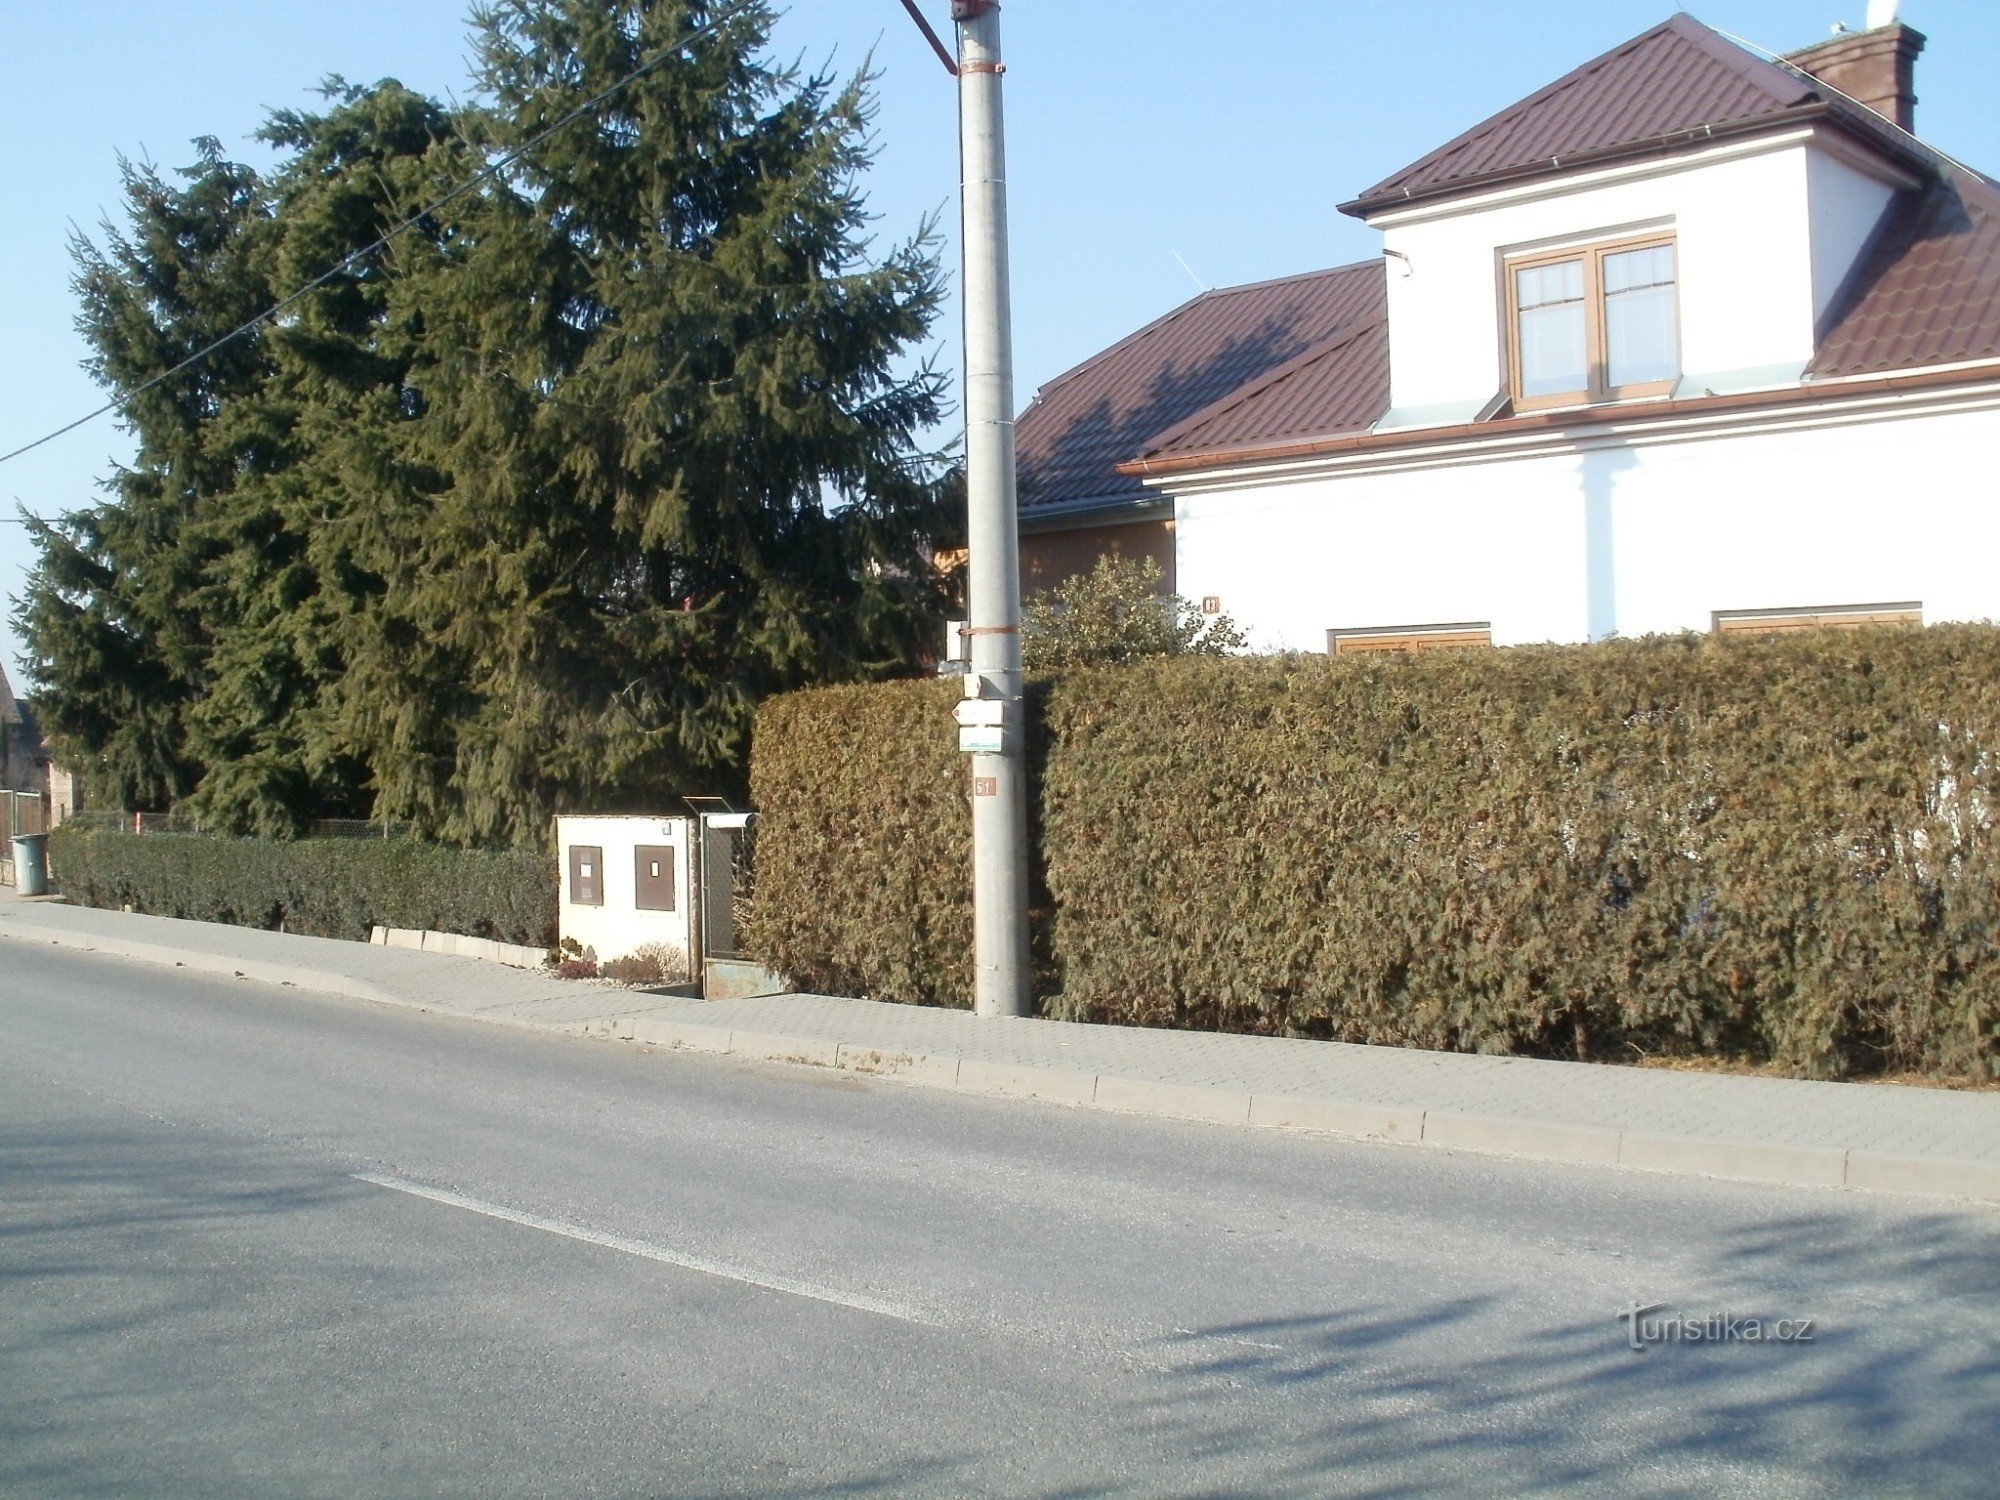 卢布诺旅游十字路口